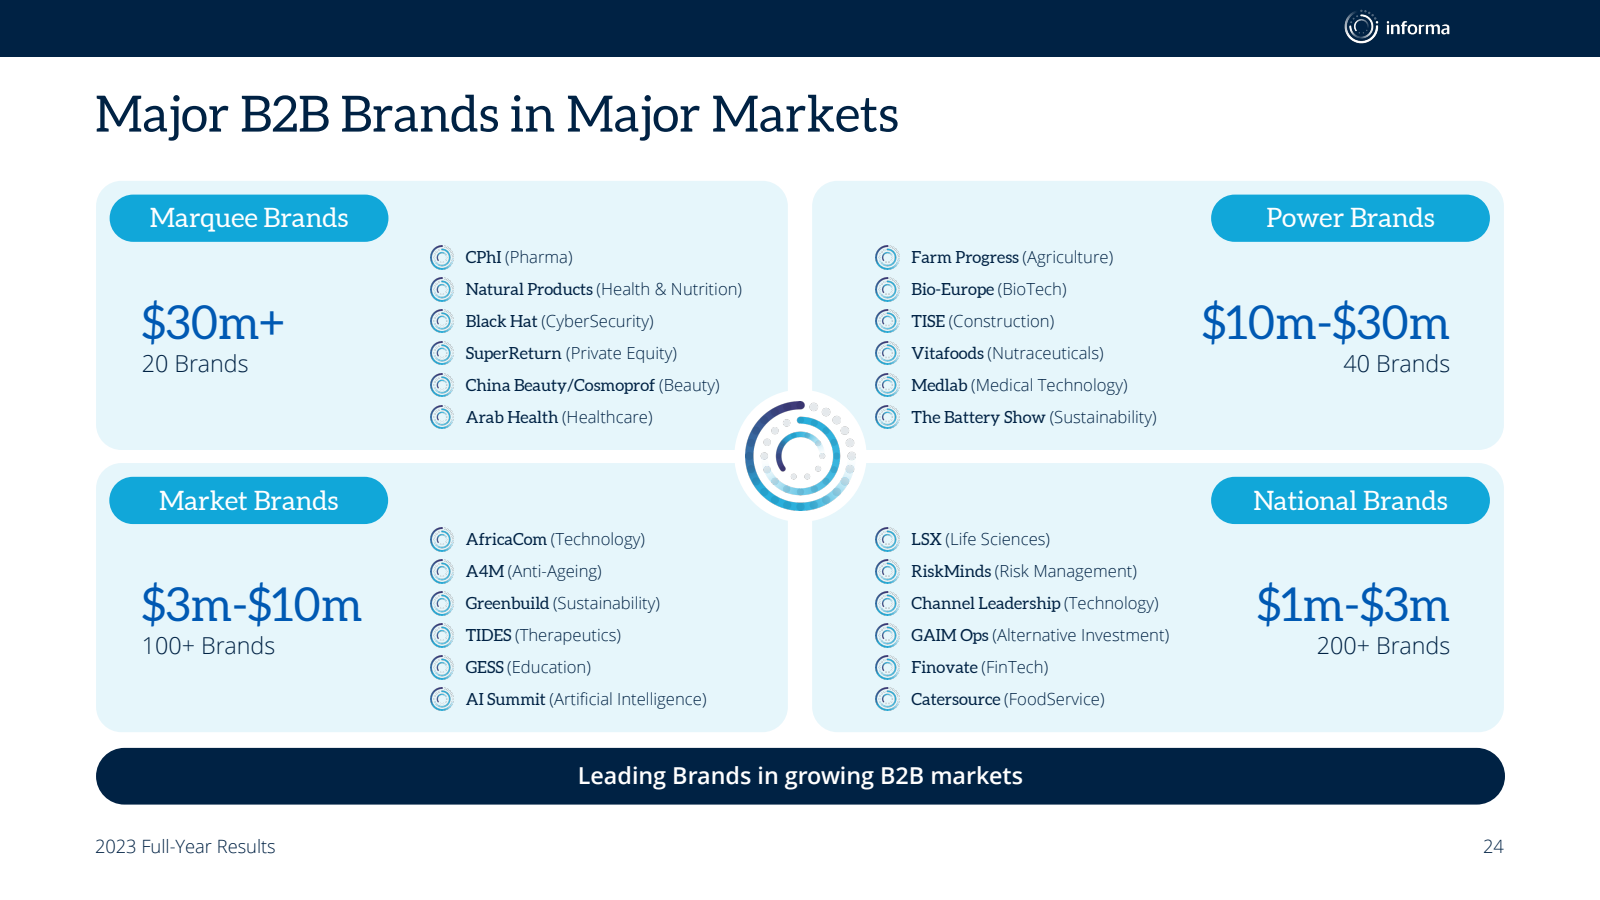 Major B2B Brands in 